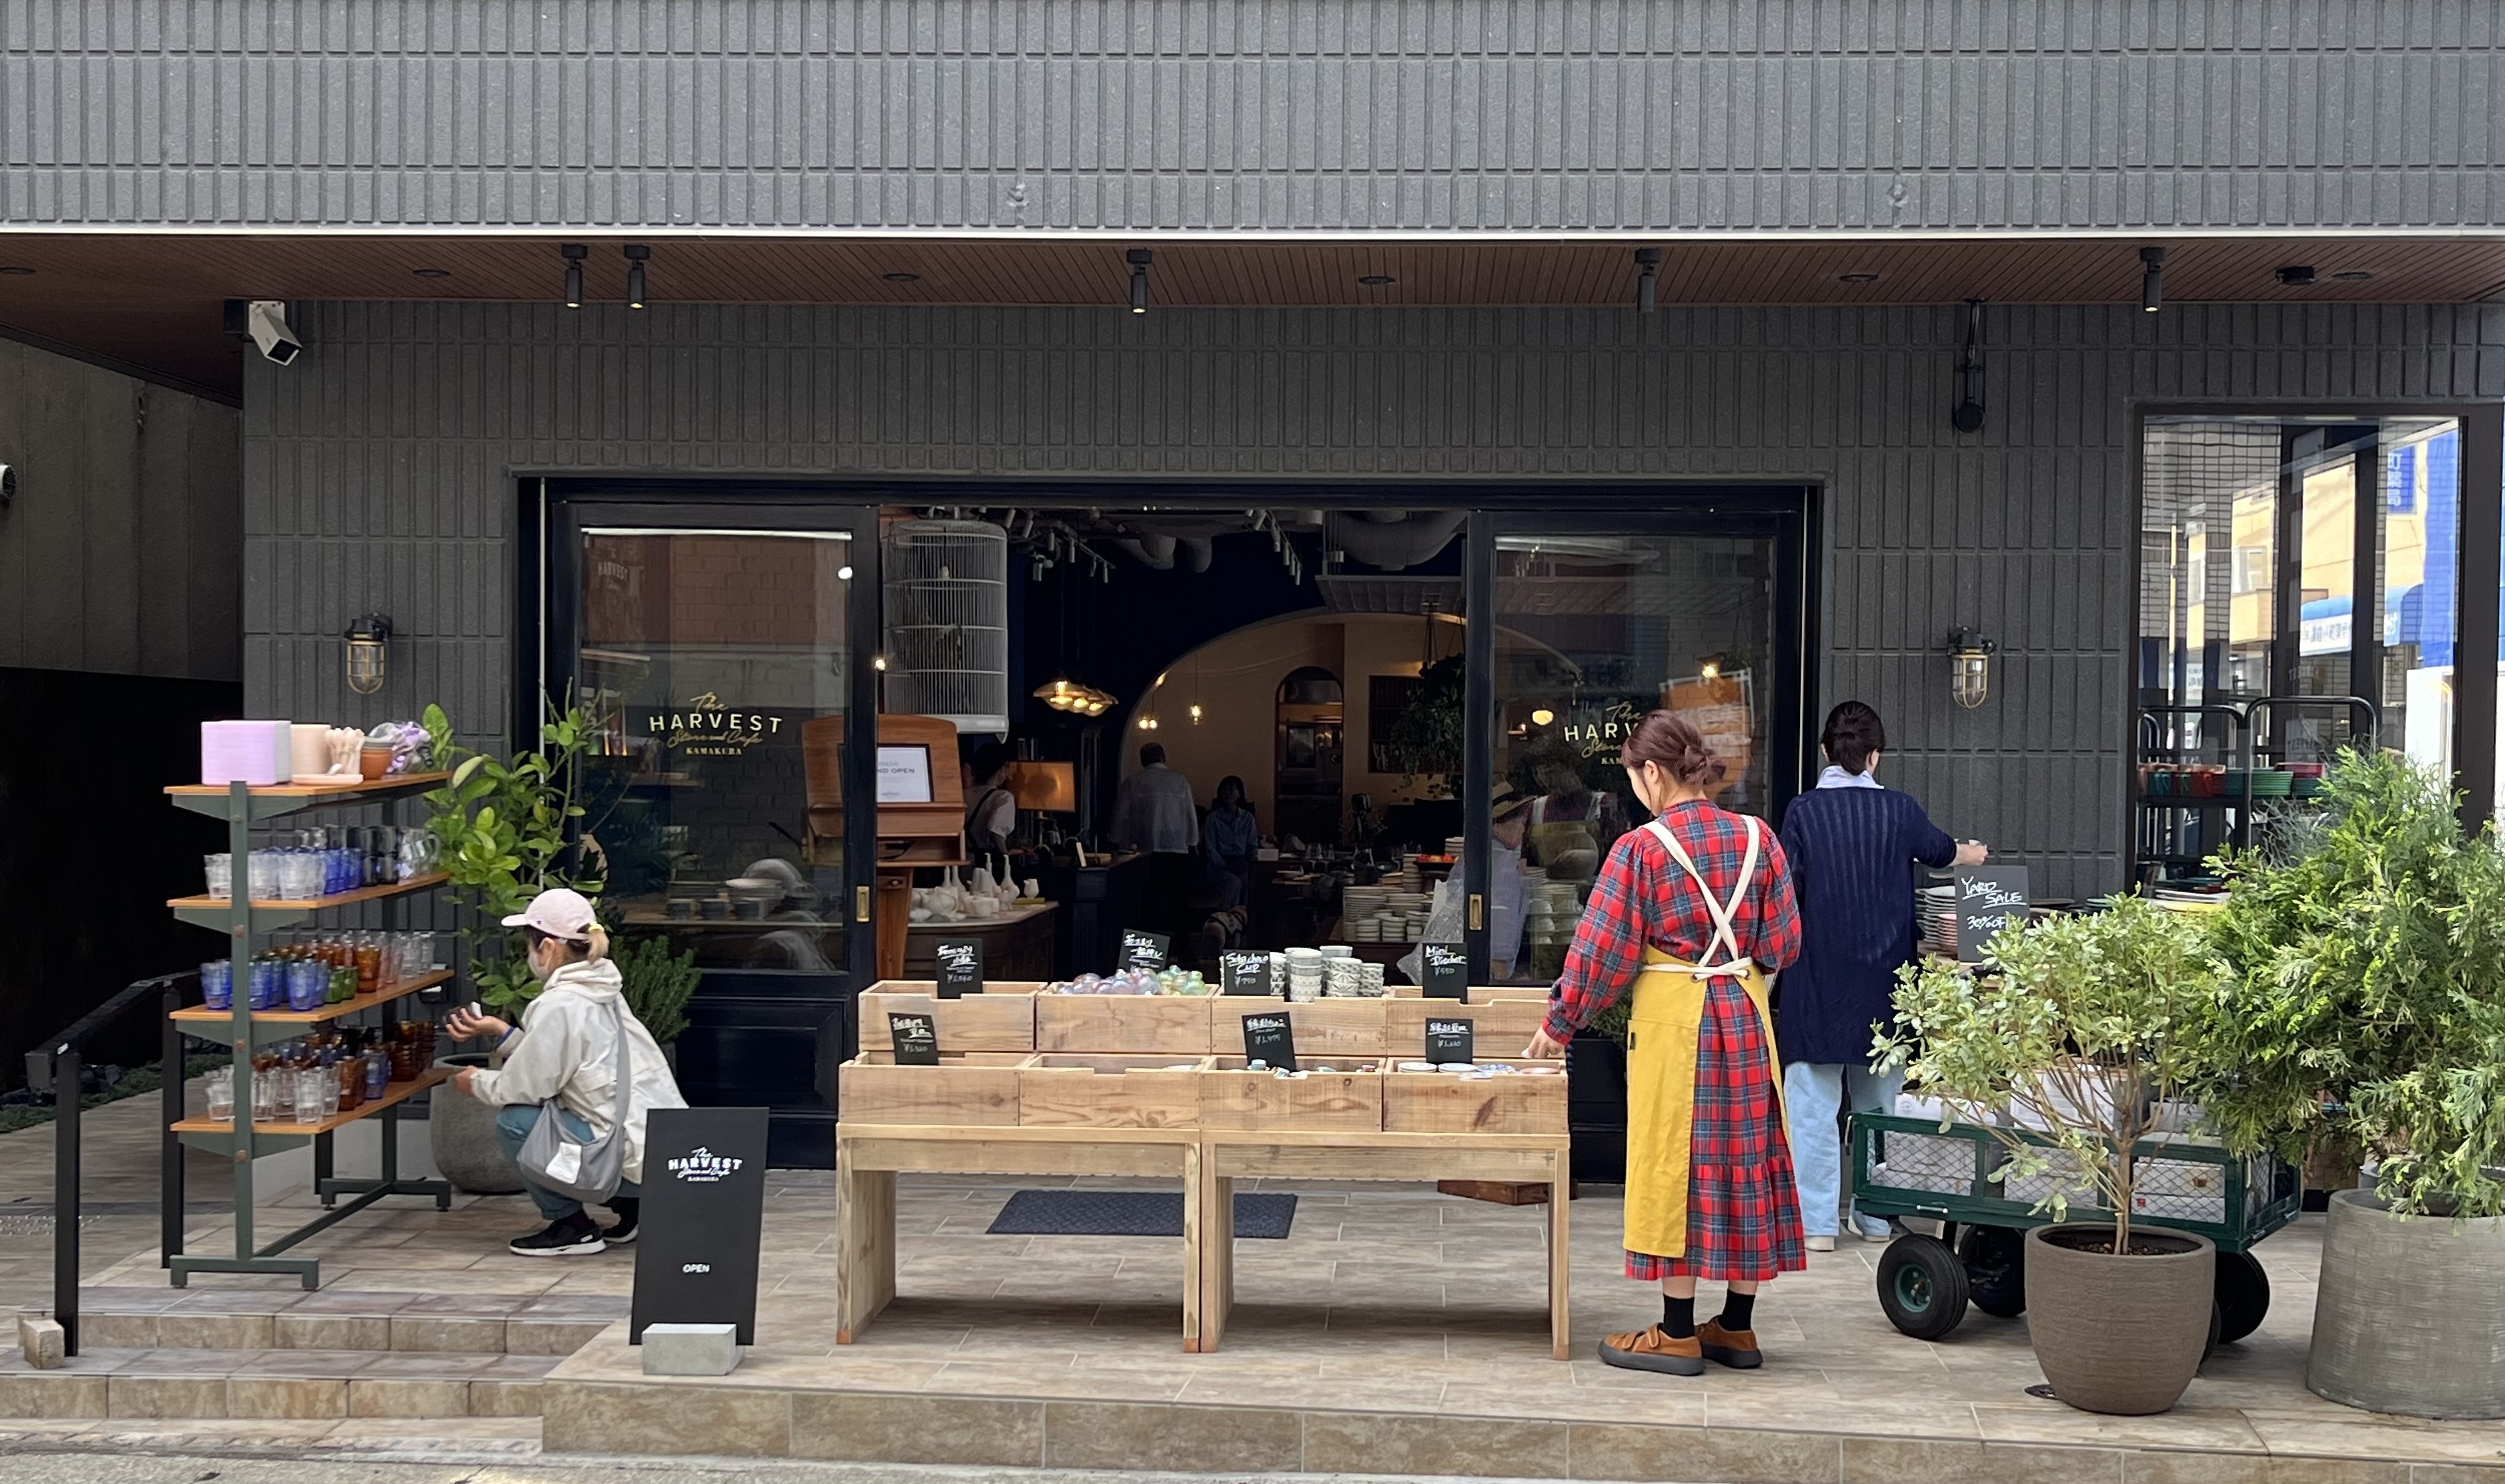 セレクト食器のお買い物とこだわりの食材が楽しめるカフェの複合店
「The HARVEST Store & Cafe」が5月9日鎌倉にグランドオープン！